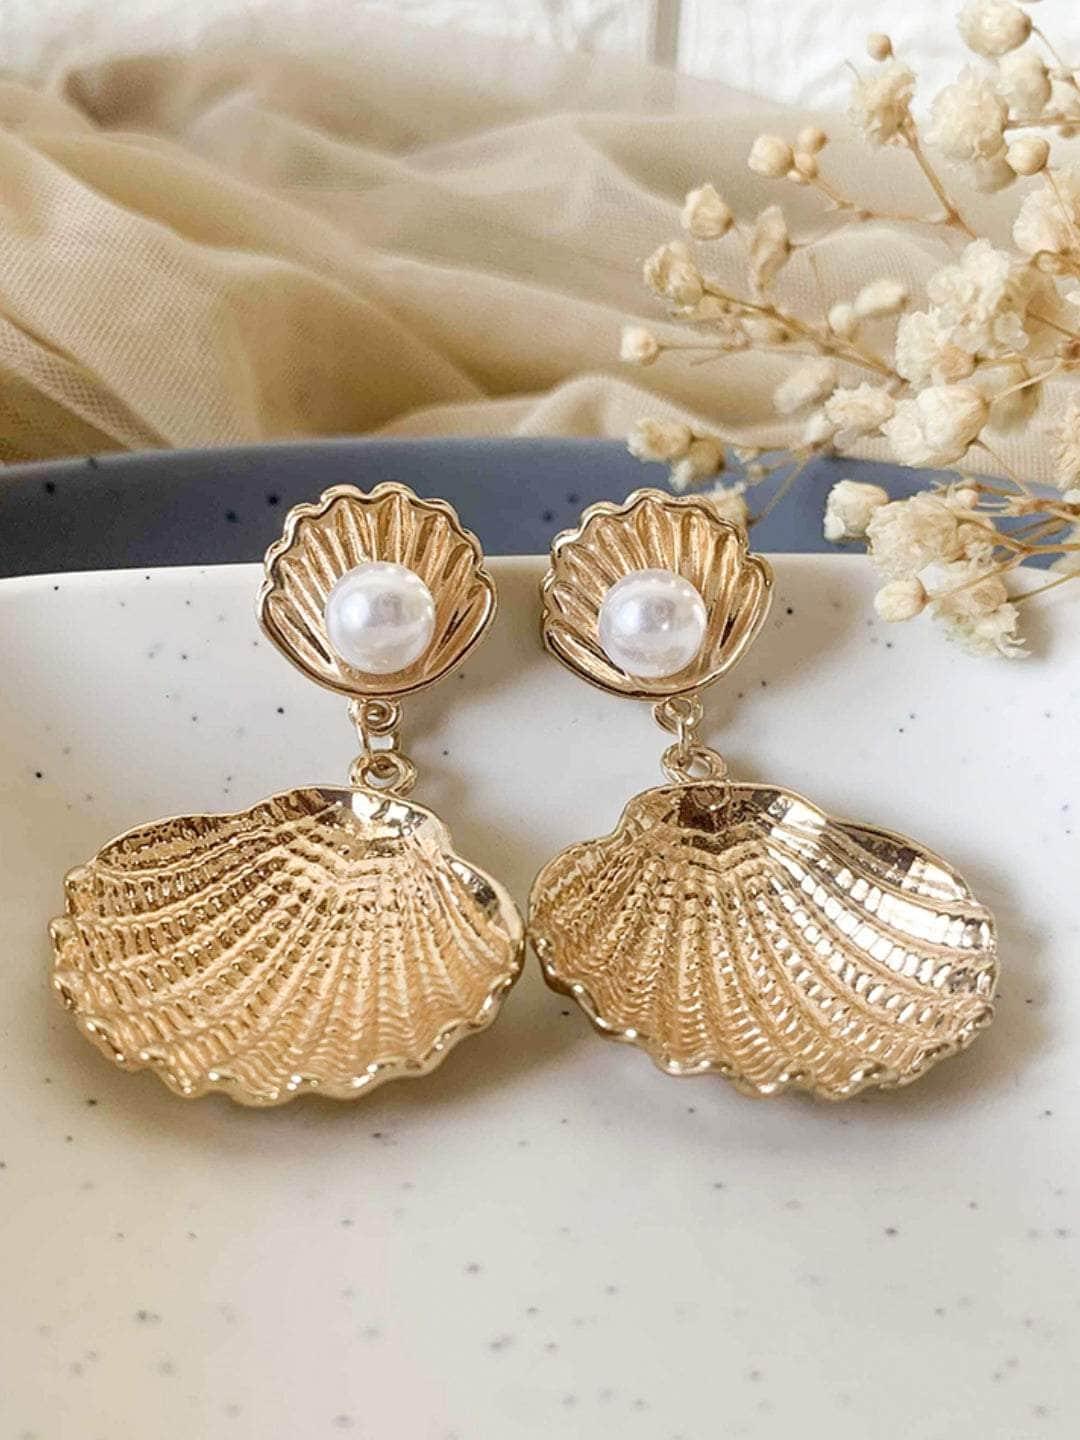 Ishhaara Shazahn Padamsee In Enchanted Pearl Seashells